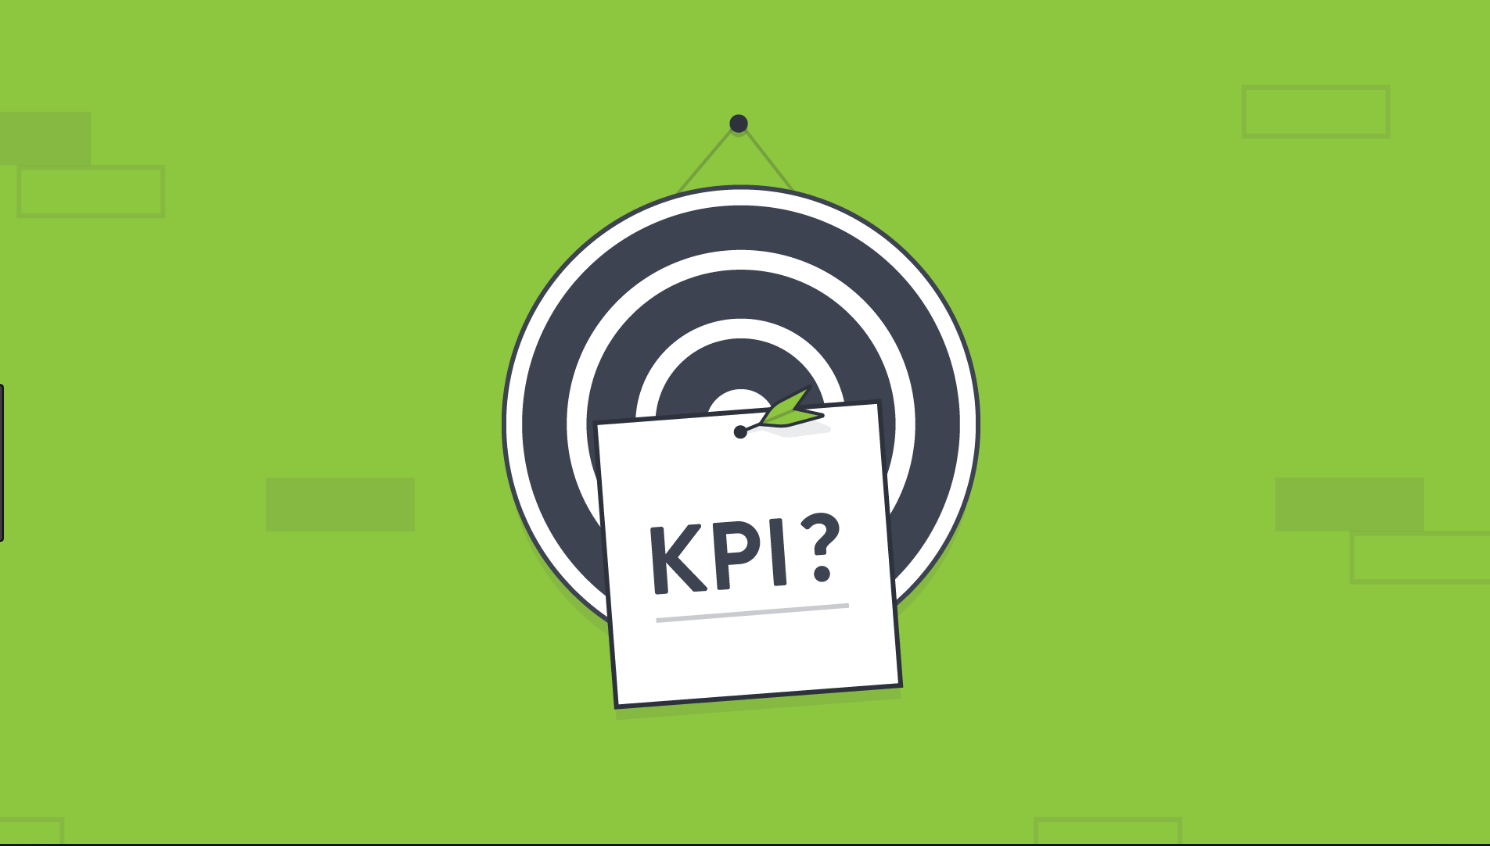 KPI là gì? Tại sao cần KPI?